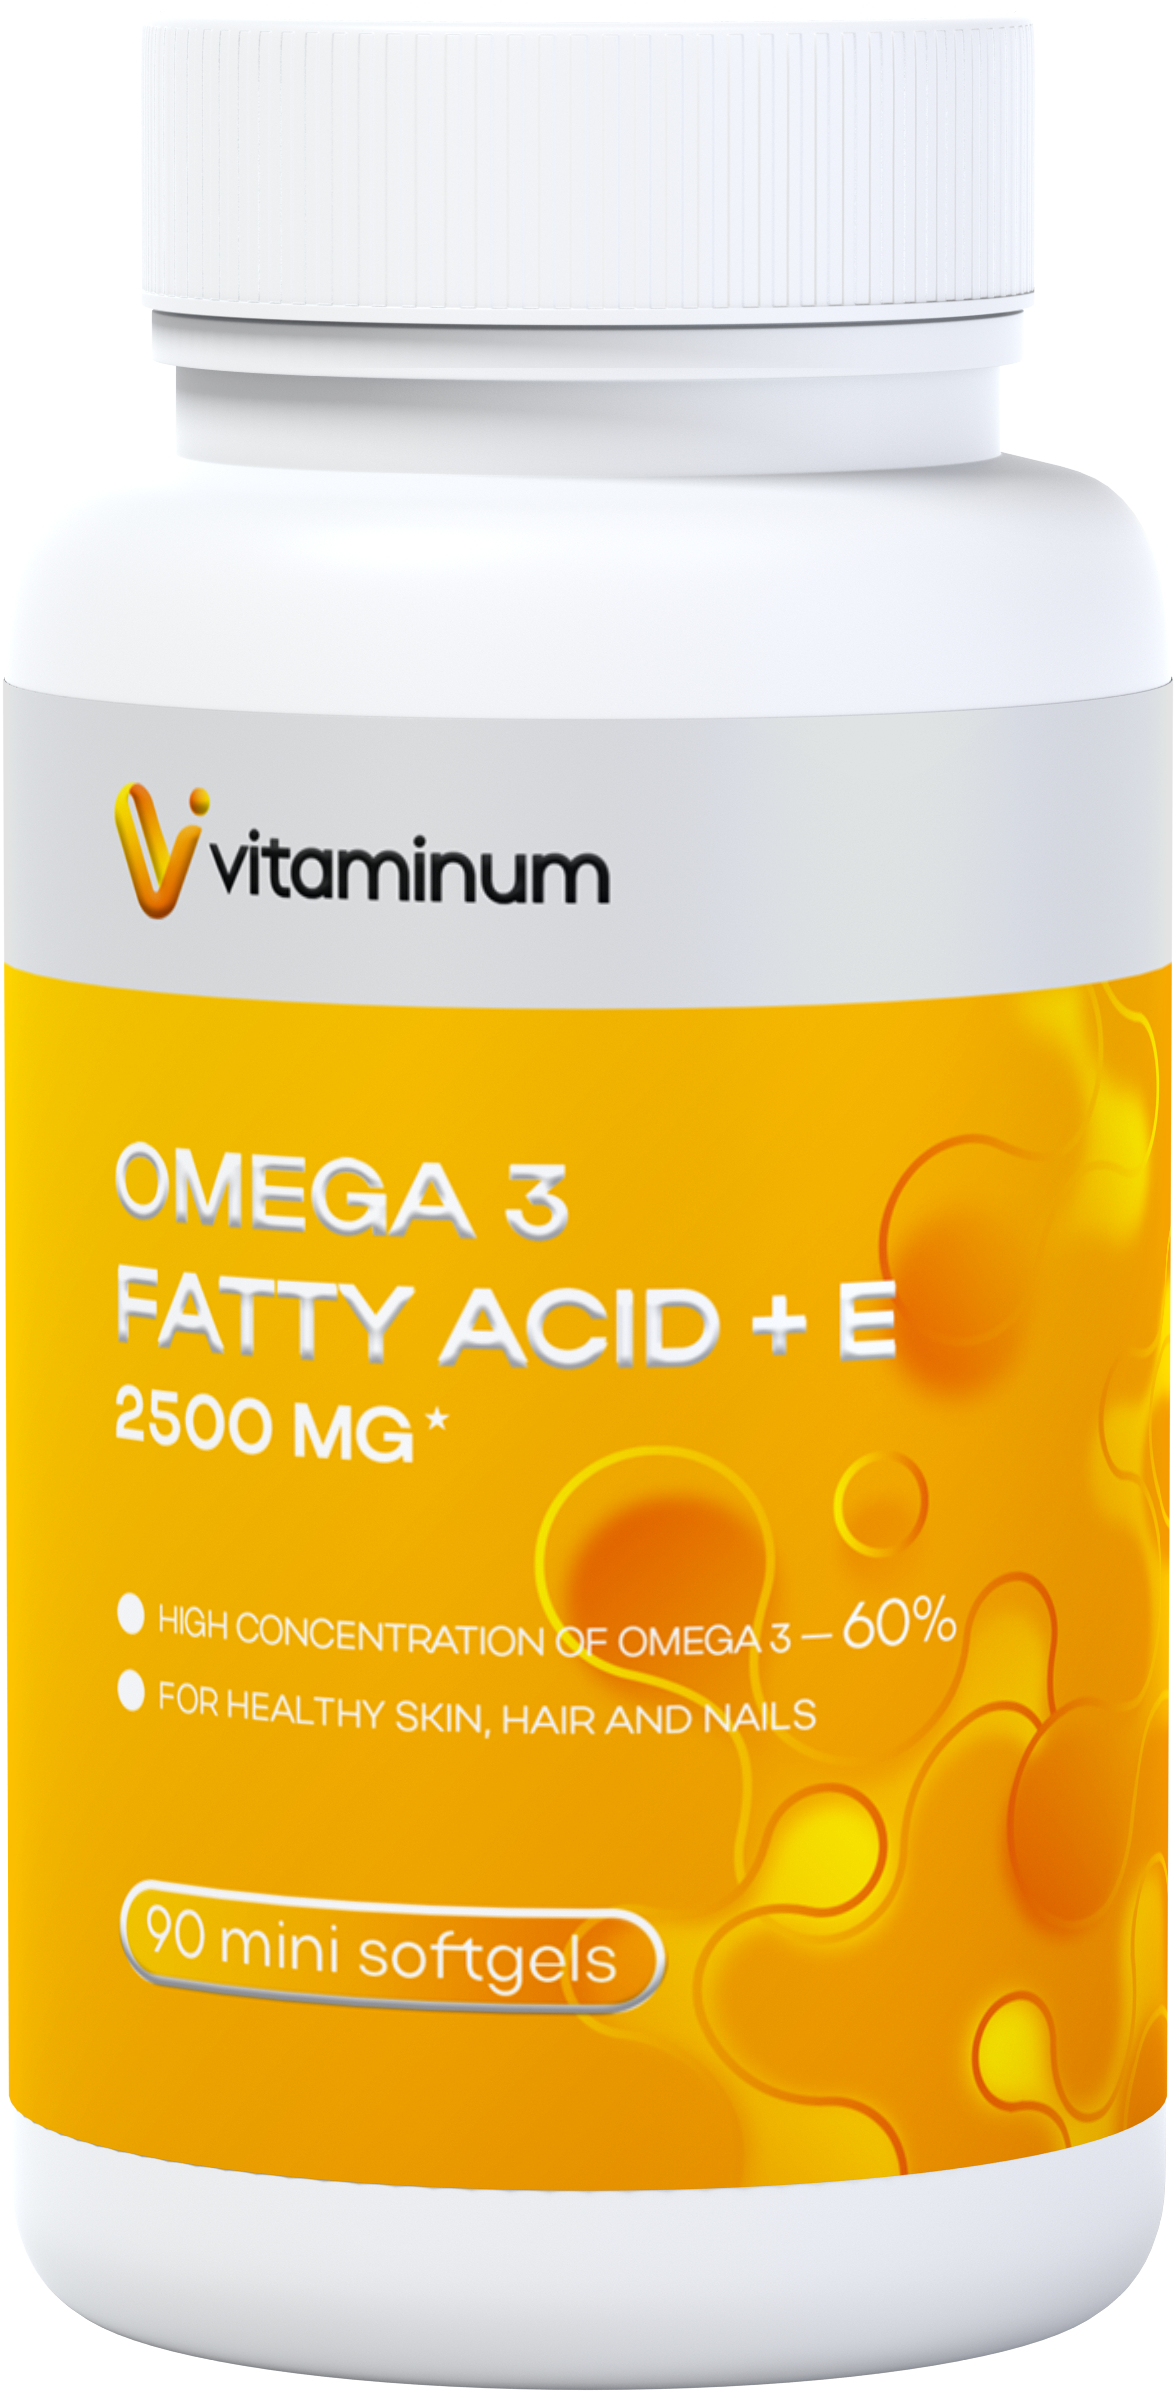  Vitaminum ОМЕГА 3 60% + витамин Е (2500 MG*) 90 капсул 700 мг   в Волжске